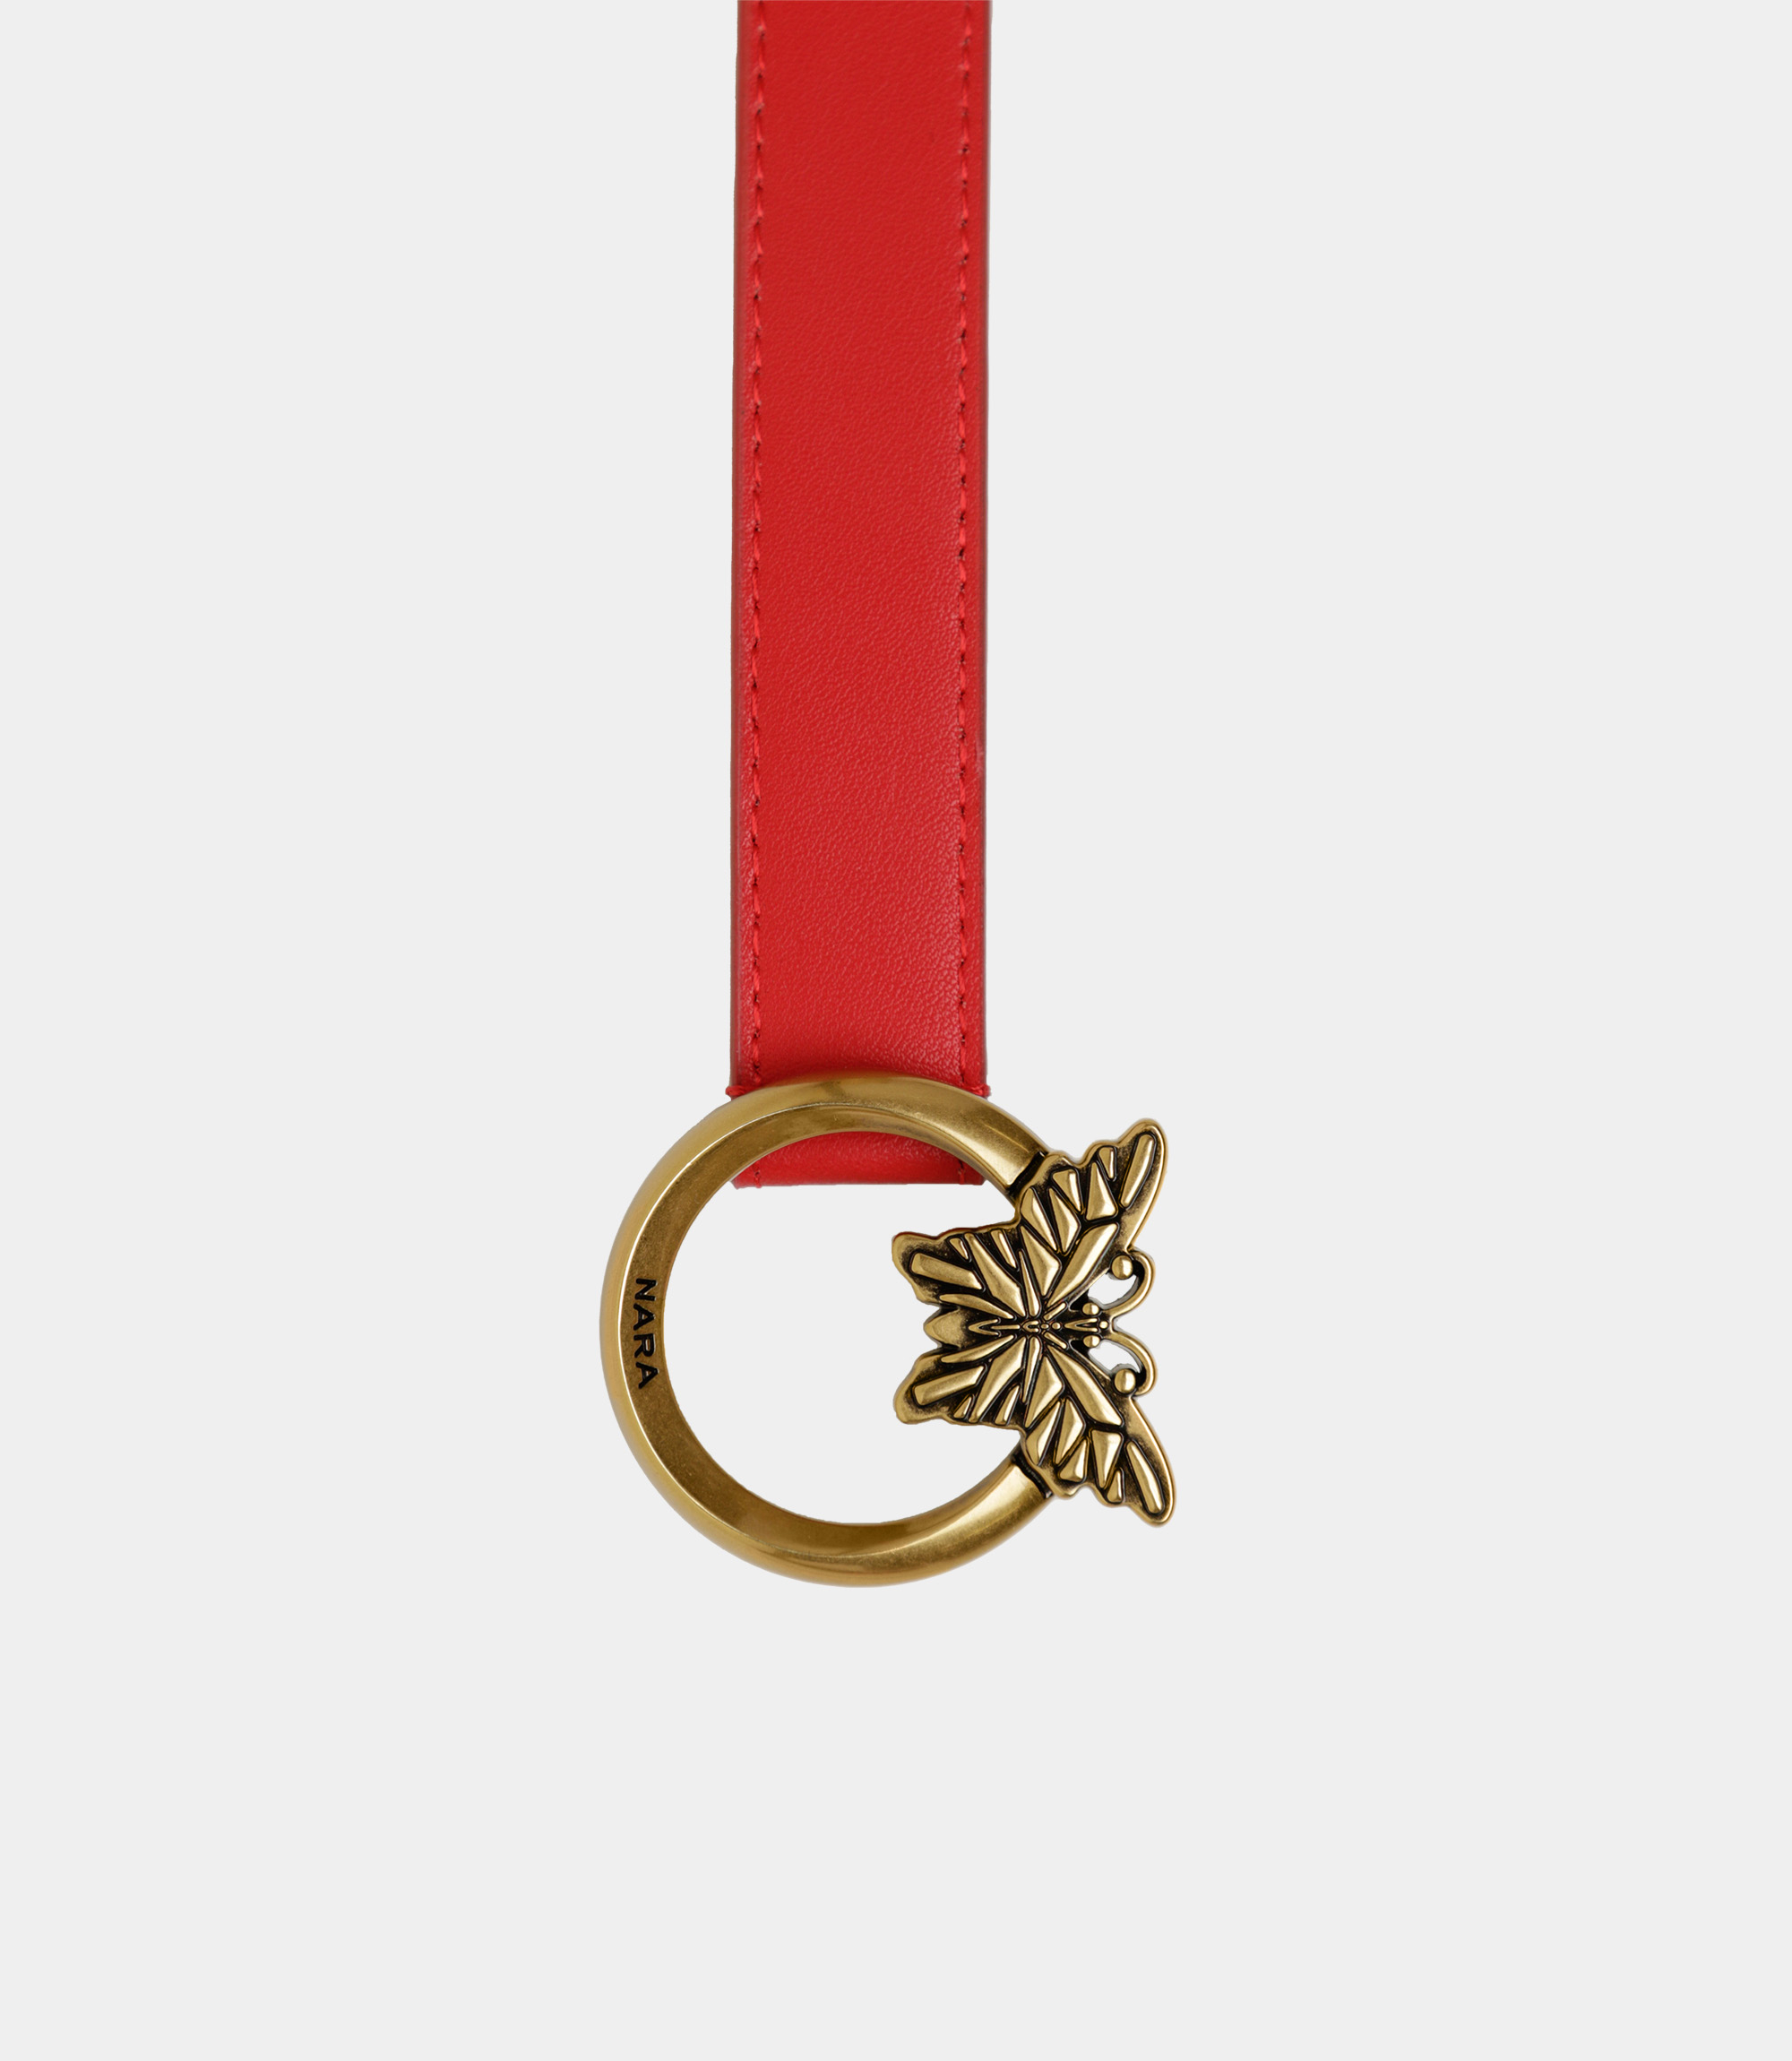 Thin leather belt with Nara logo - Red - NaraMilano